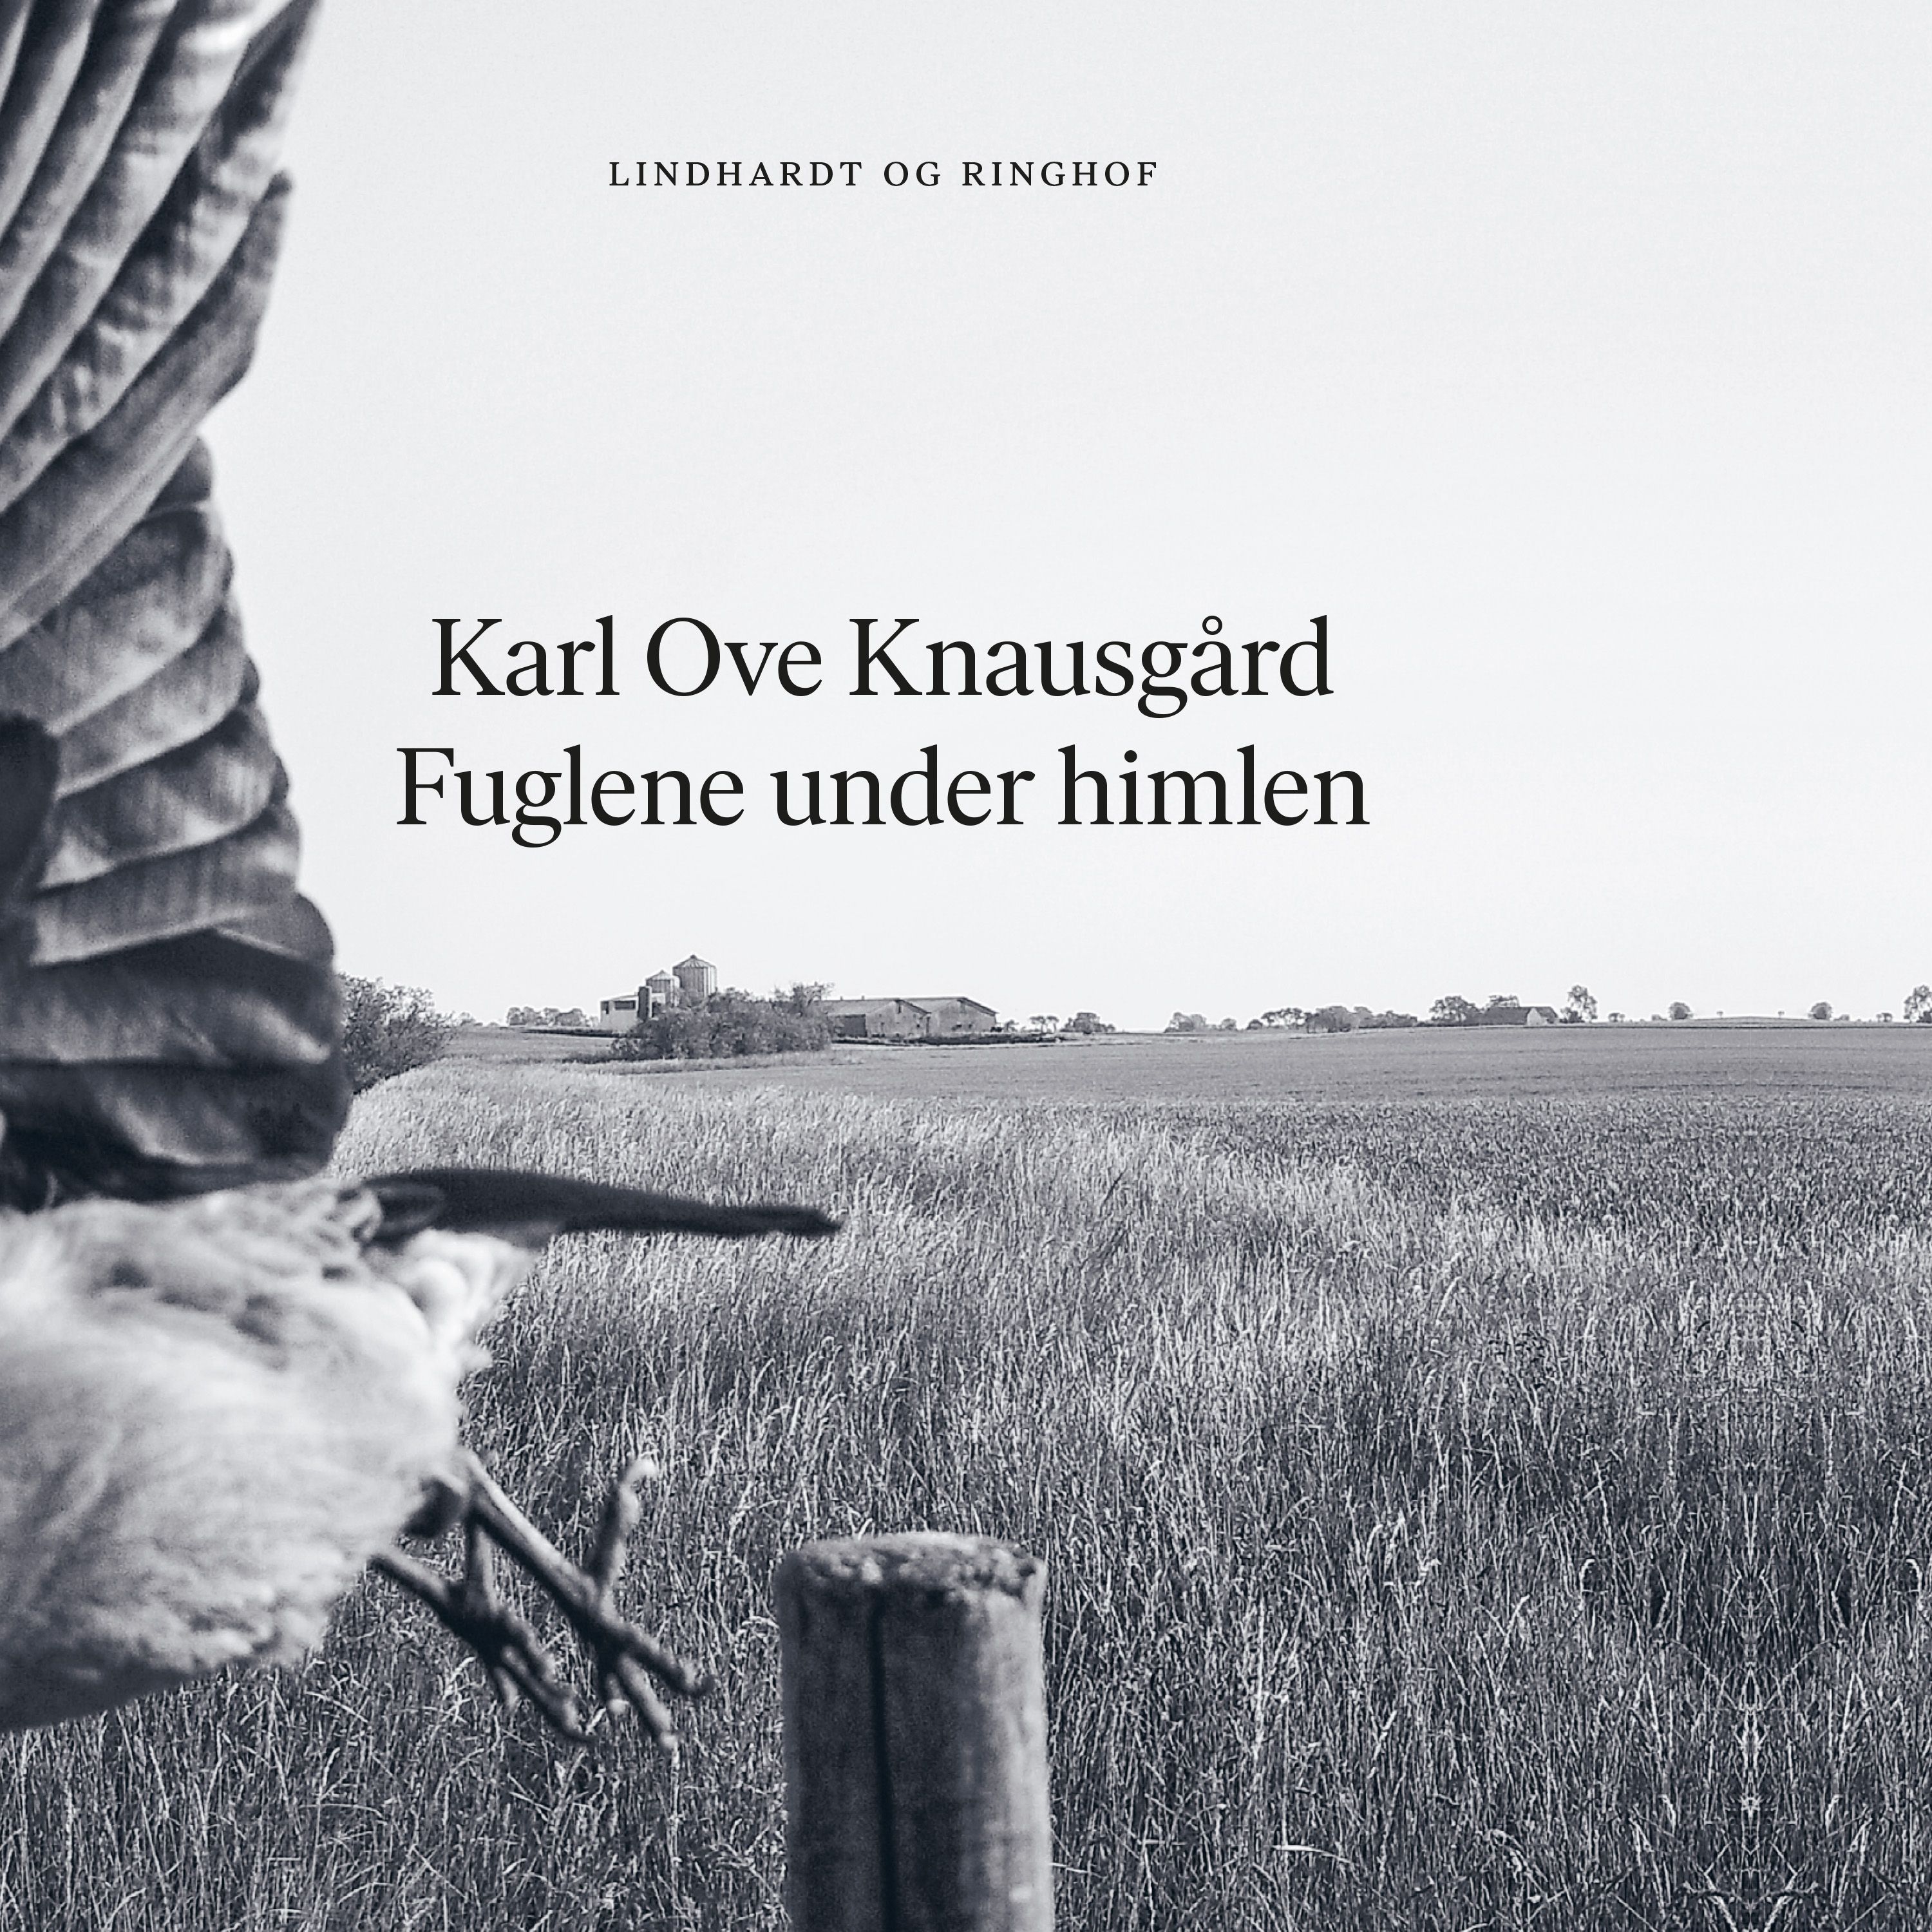 Fuglene under himlen, ljudbok av Karl Ove Knausgård